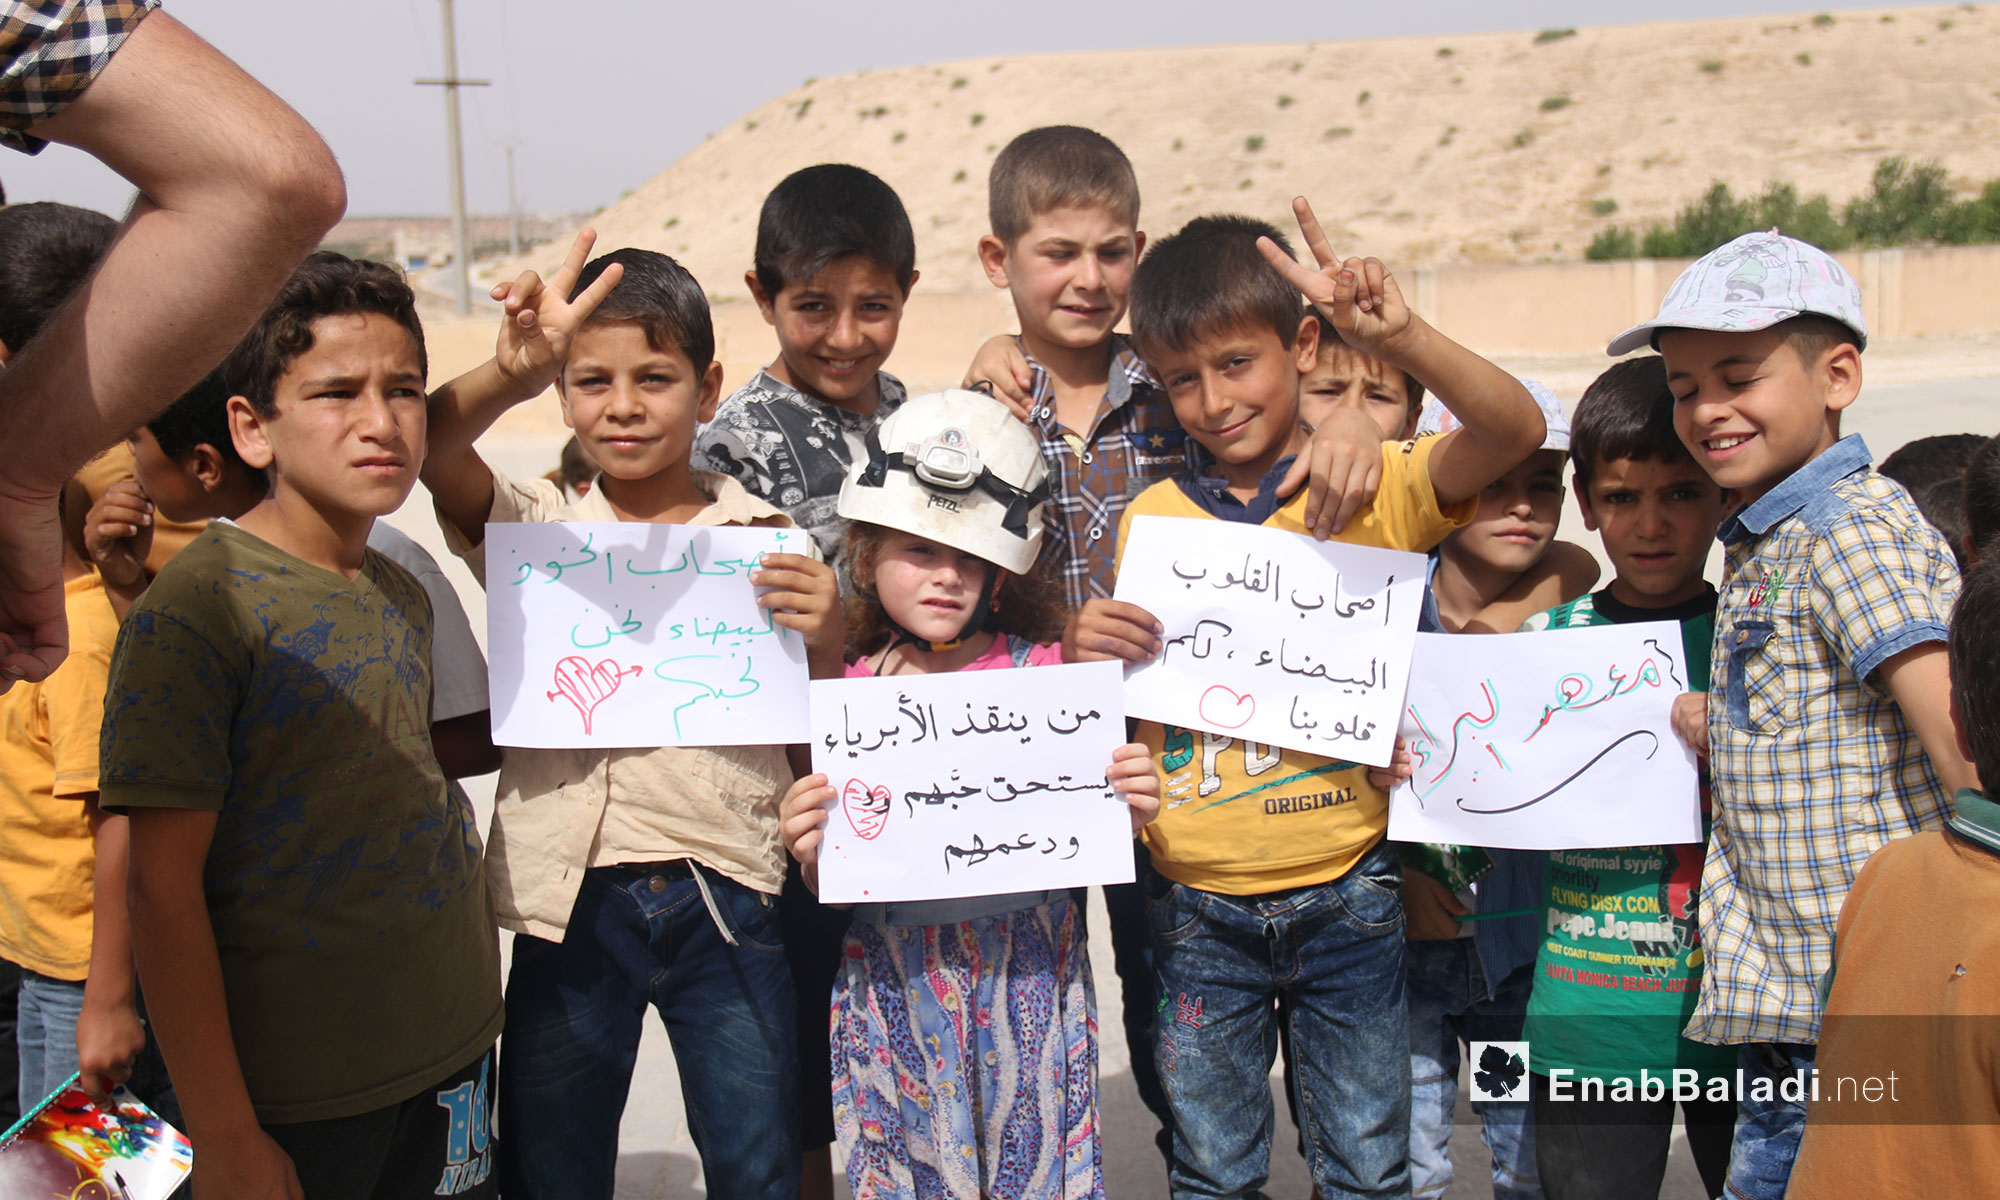 طلاب مدرسة براعم المستقبل في وقفة تضامنية لأجل الدفاع المدني السوري في ريف إدلب - 25 تموز 2018 (عنب بلدي)